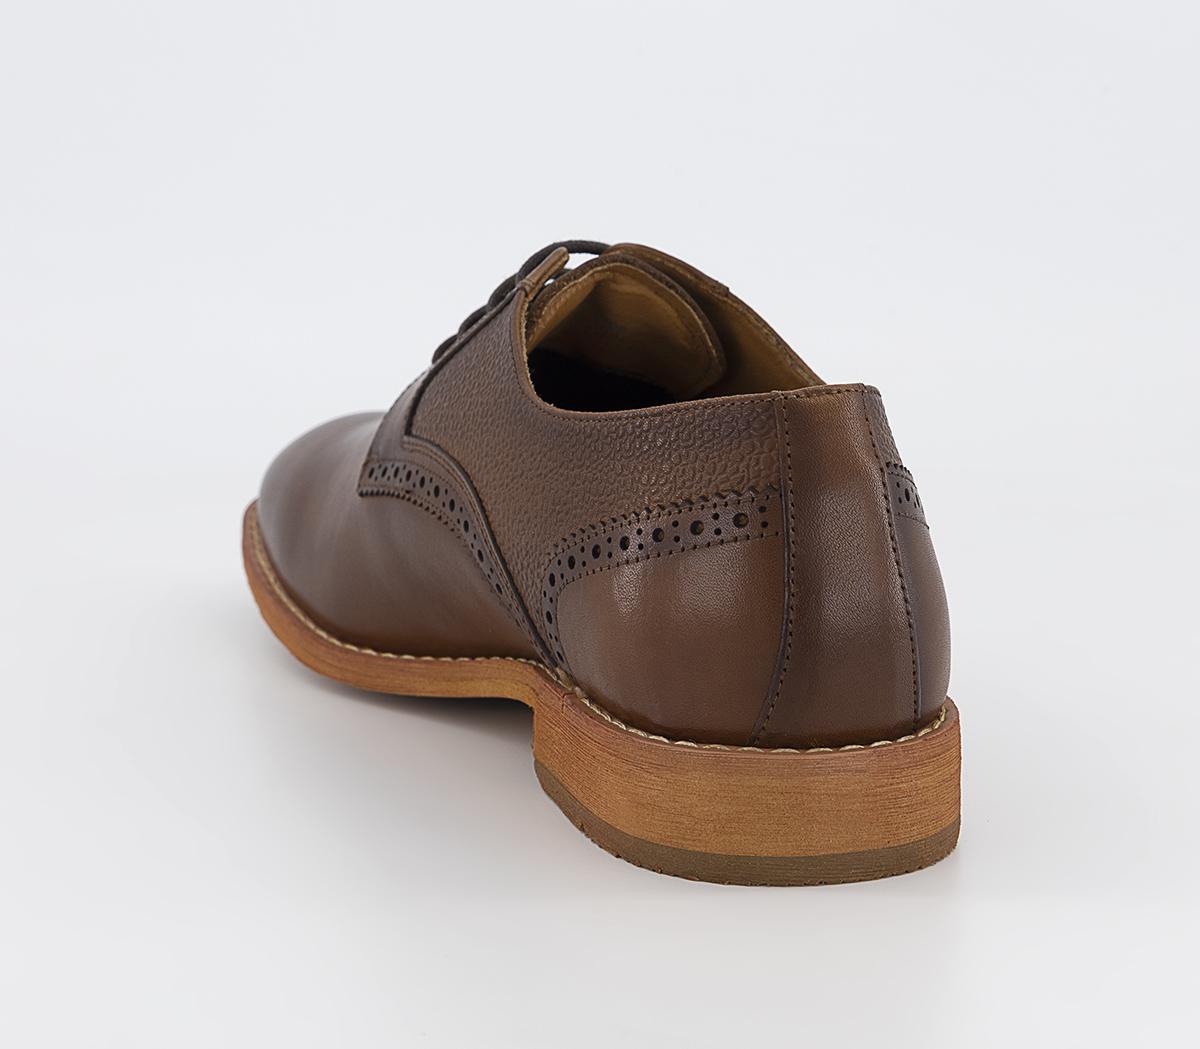 OFFICE Martley Pebble Grain Quarter Derby Shoes Tan Leather - Men’s ...